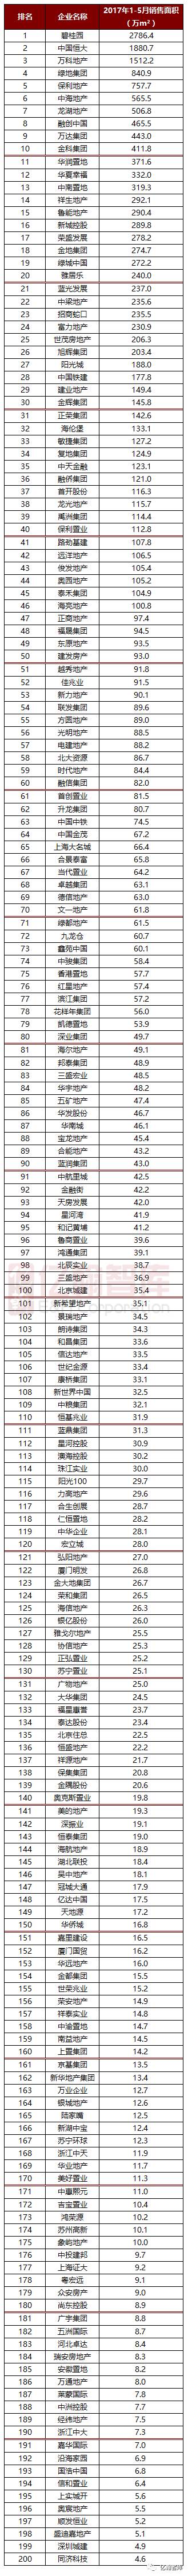 重磅 | 2017年1-5月中国典型房企销售业绩TOP200【第35期】